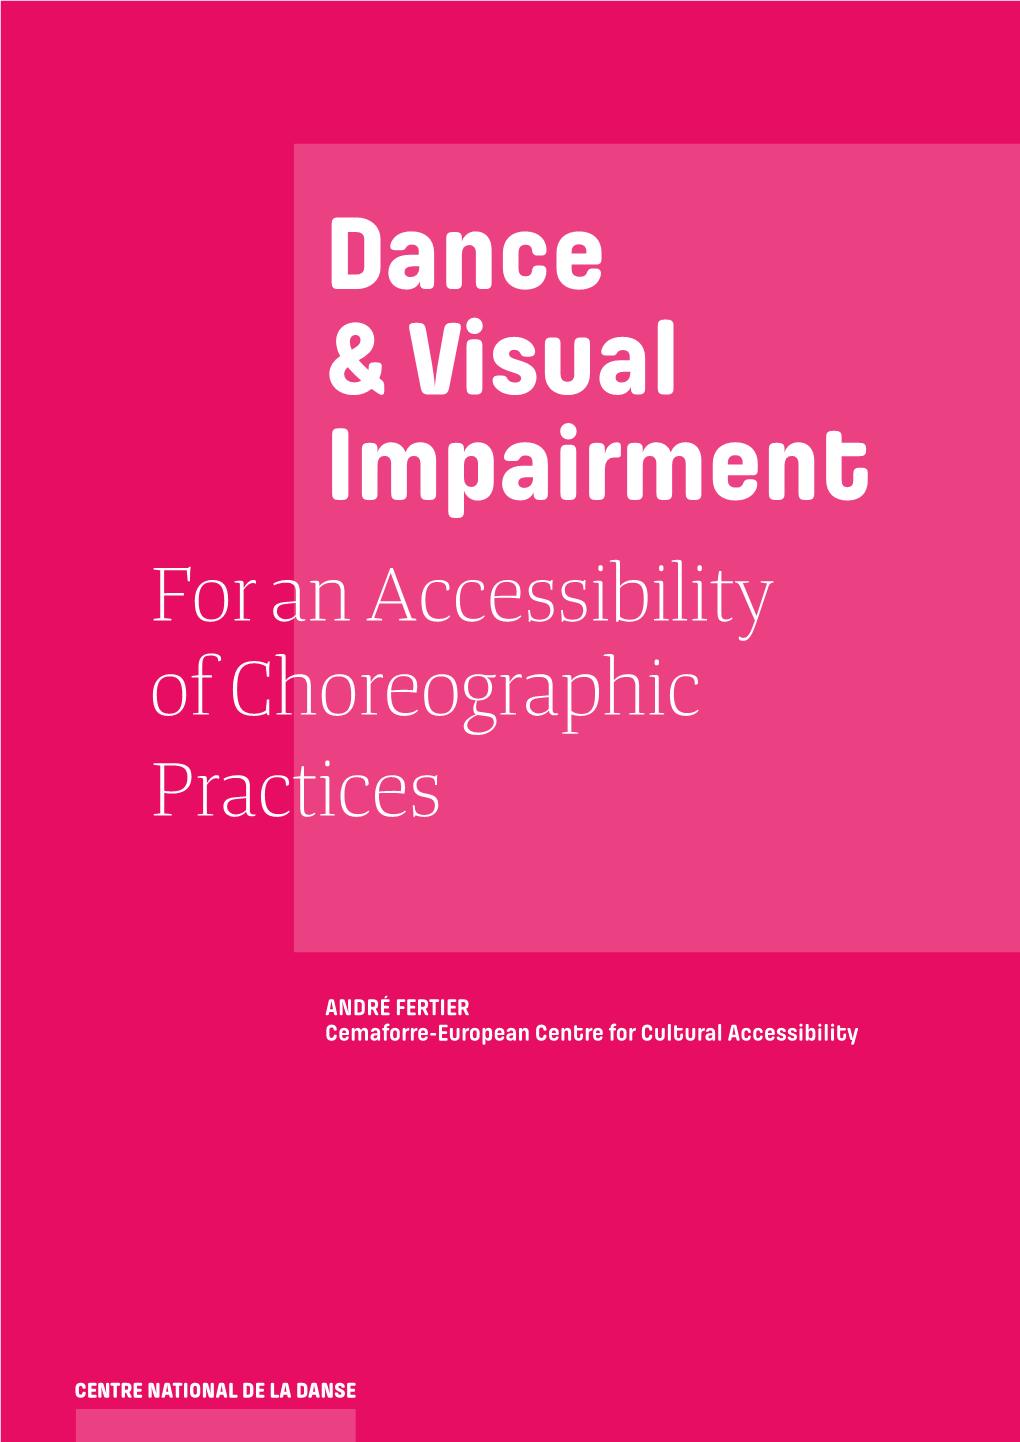 Dance & Visual Impairment